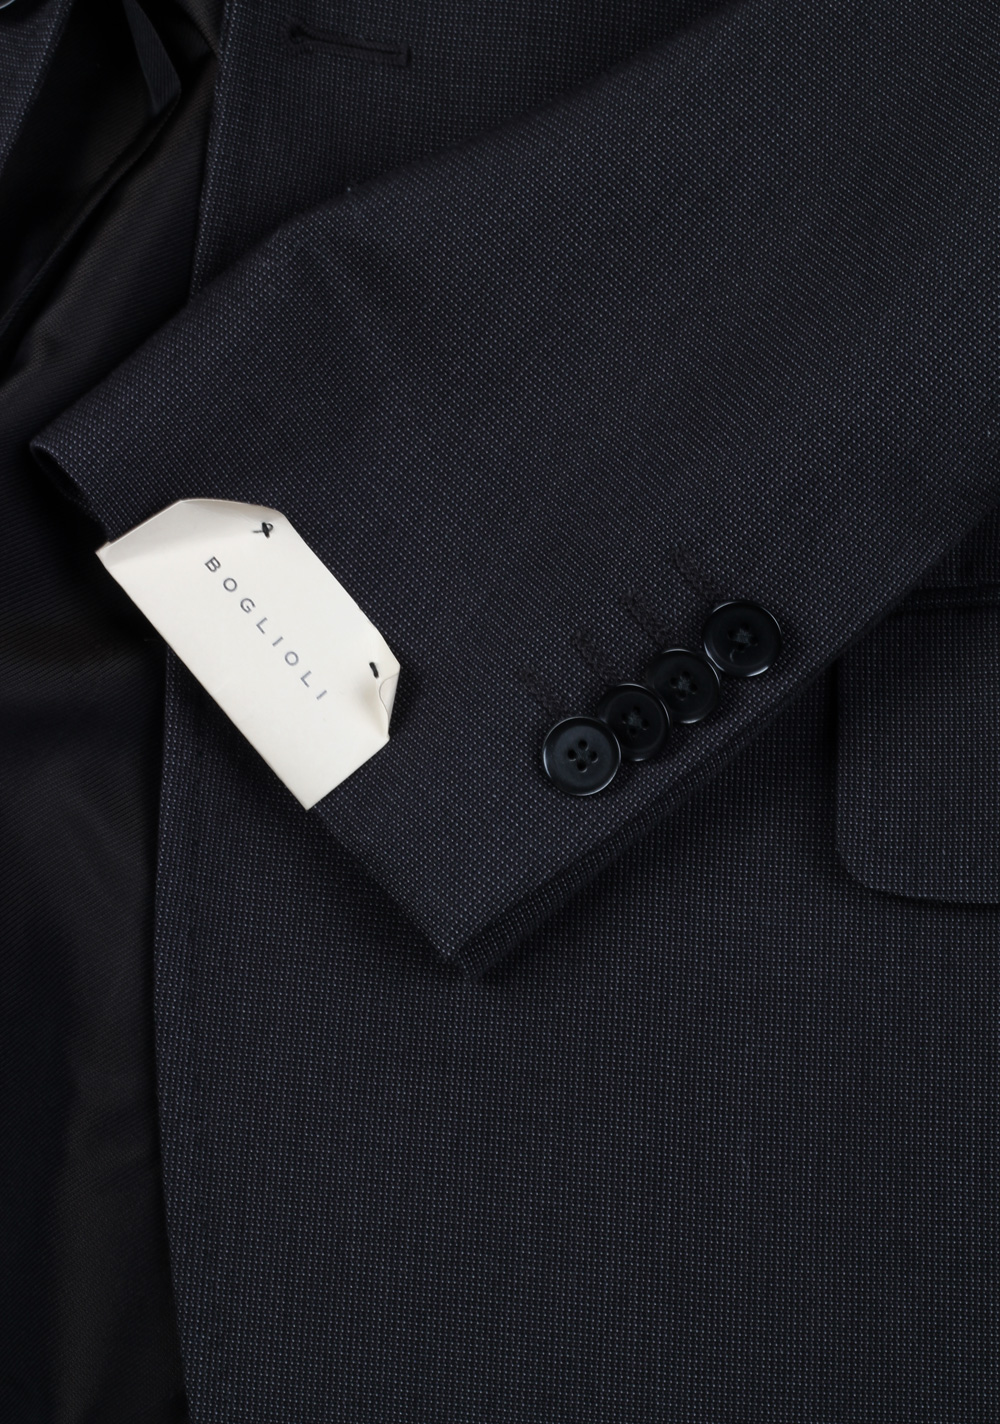 Boglioli Charcoal Suit Size 50 / 40R U.S. | Costume Limité